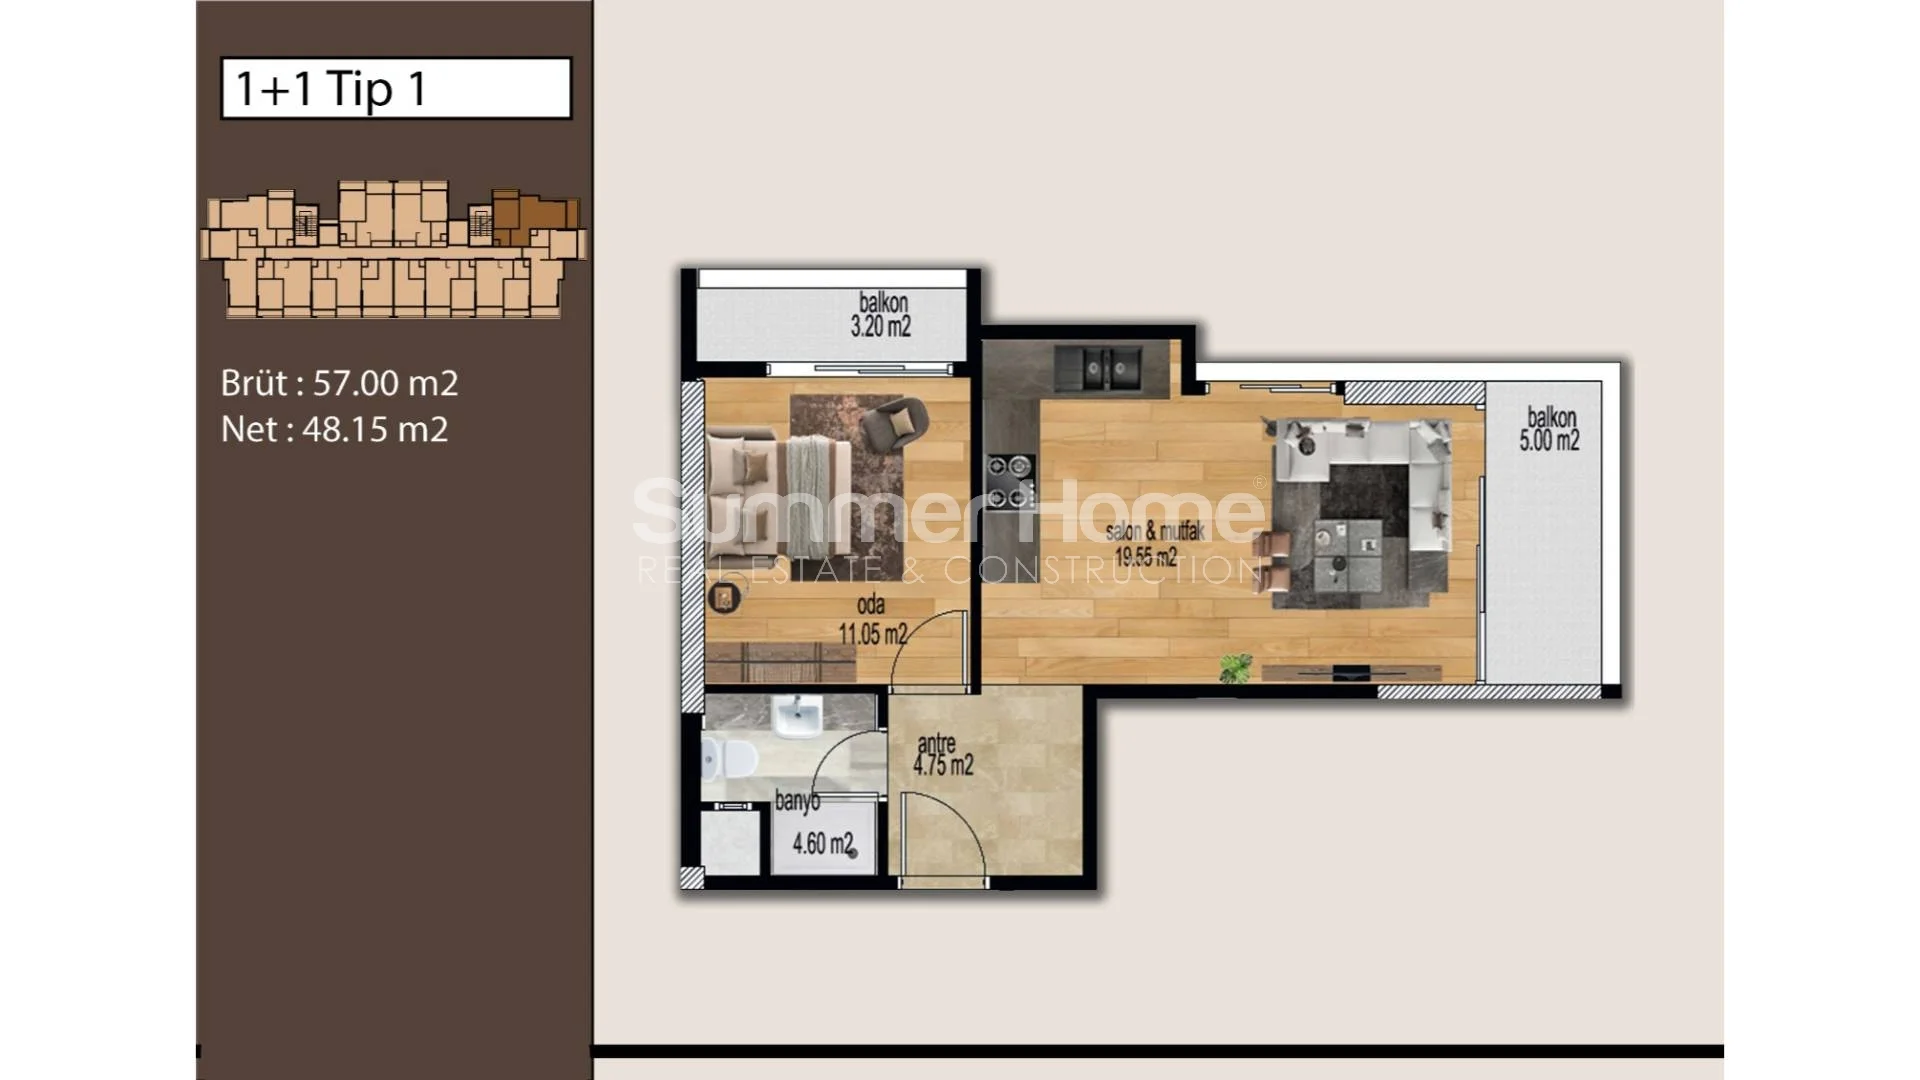 Mezitli, Mersin'de bulunan güzel modern daireler Plan - 11